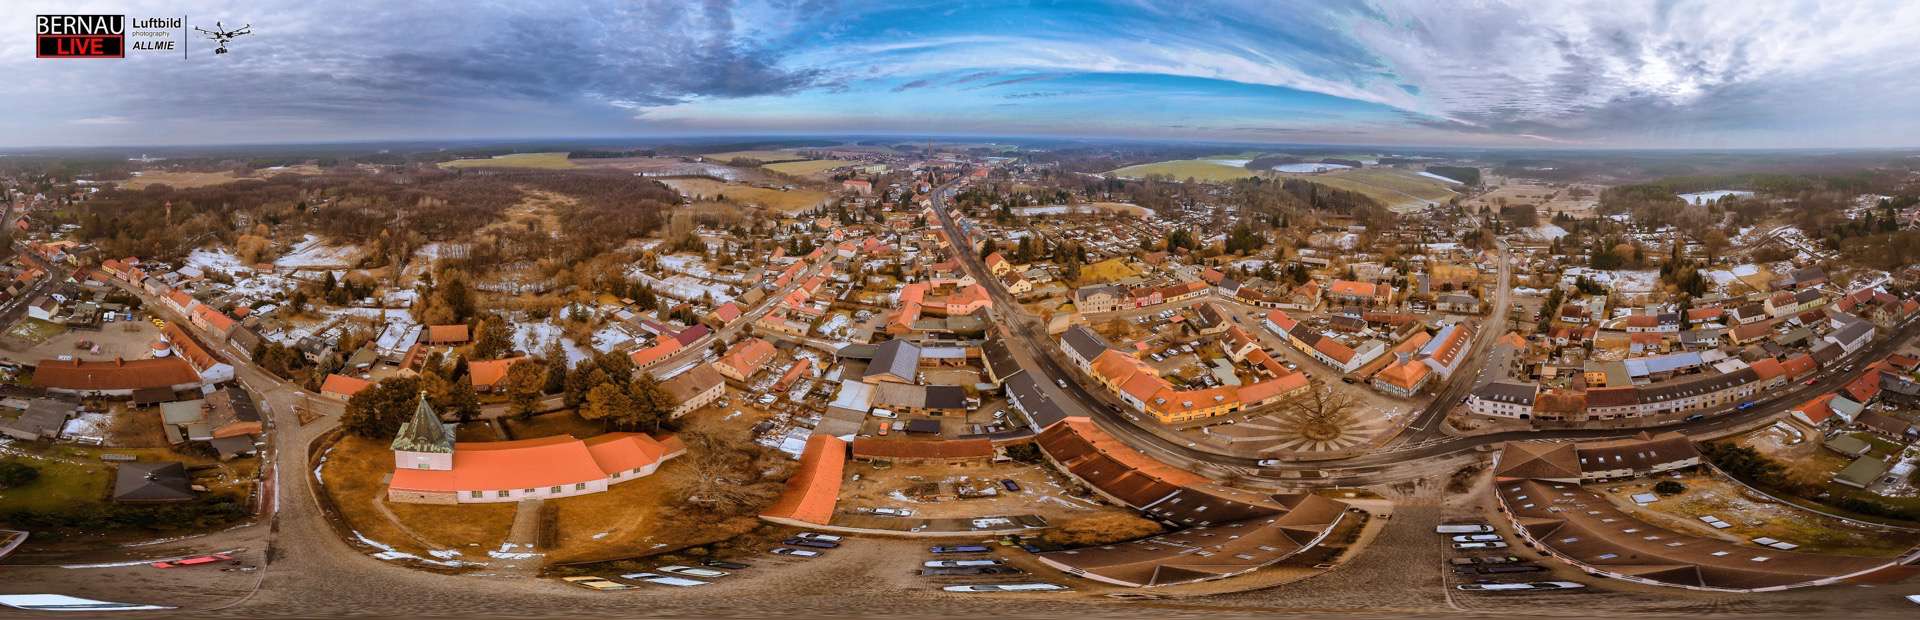 Biesenthal in toller 360 Grad Perspektive aus der Luft erkunden